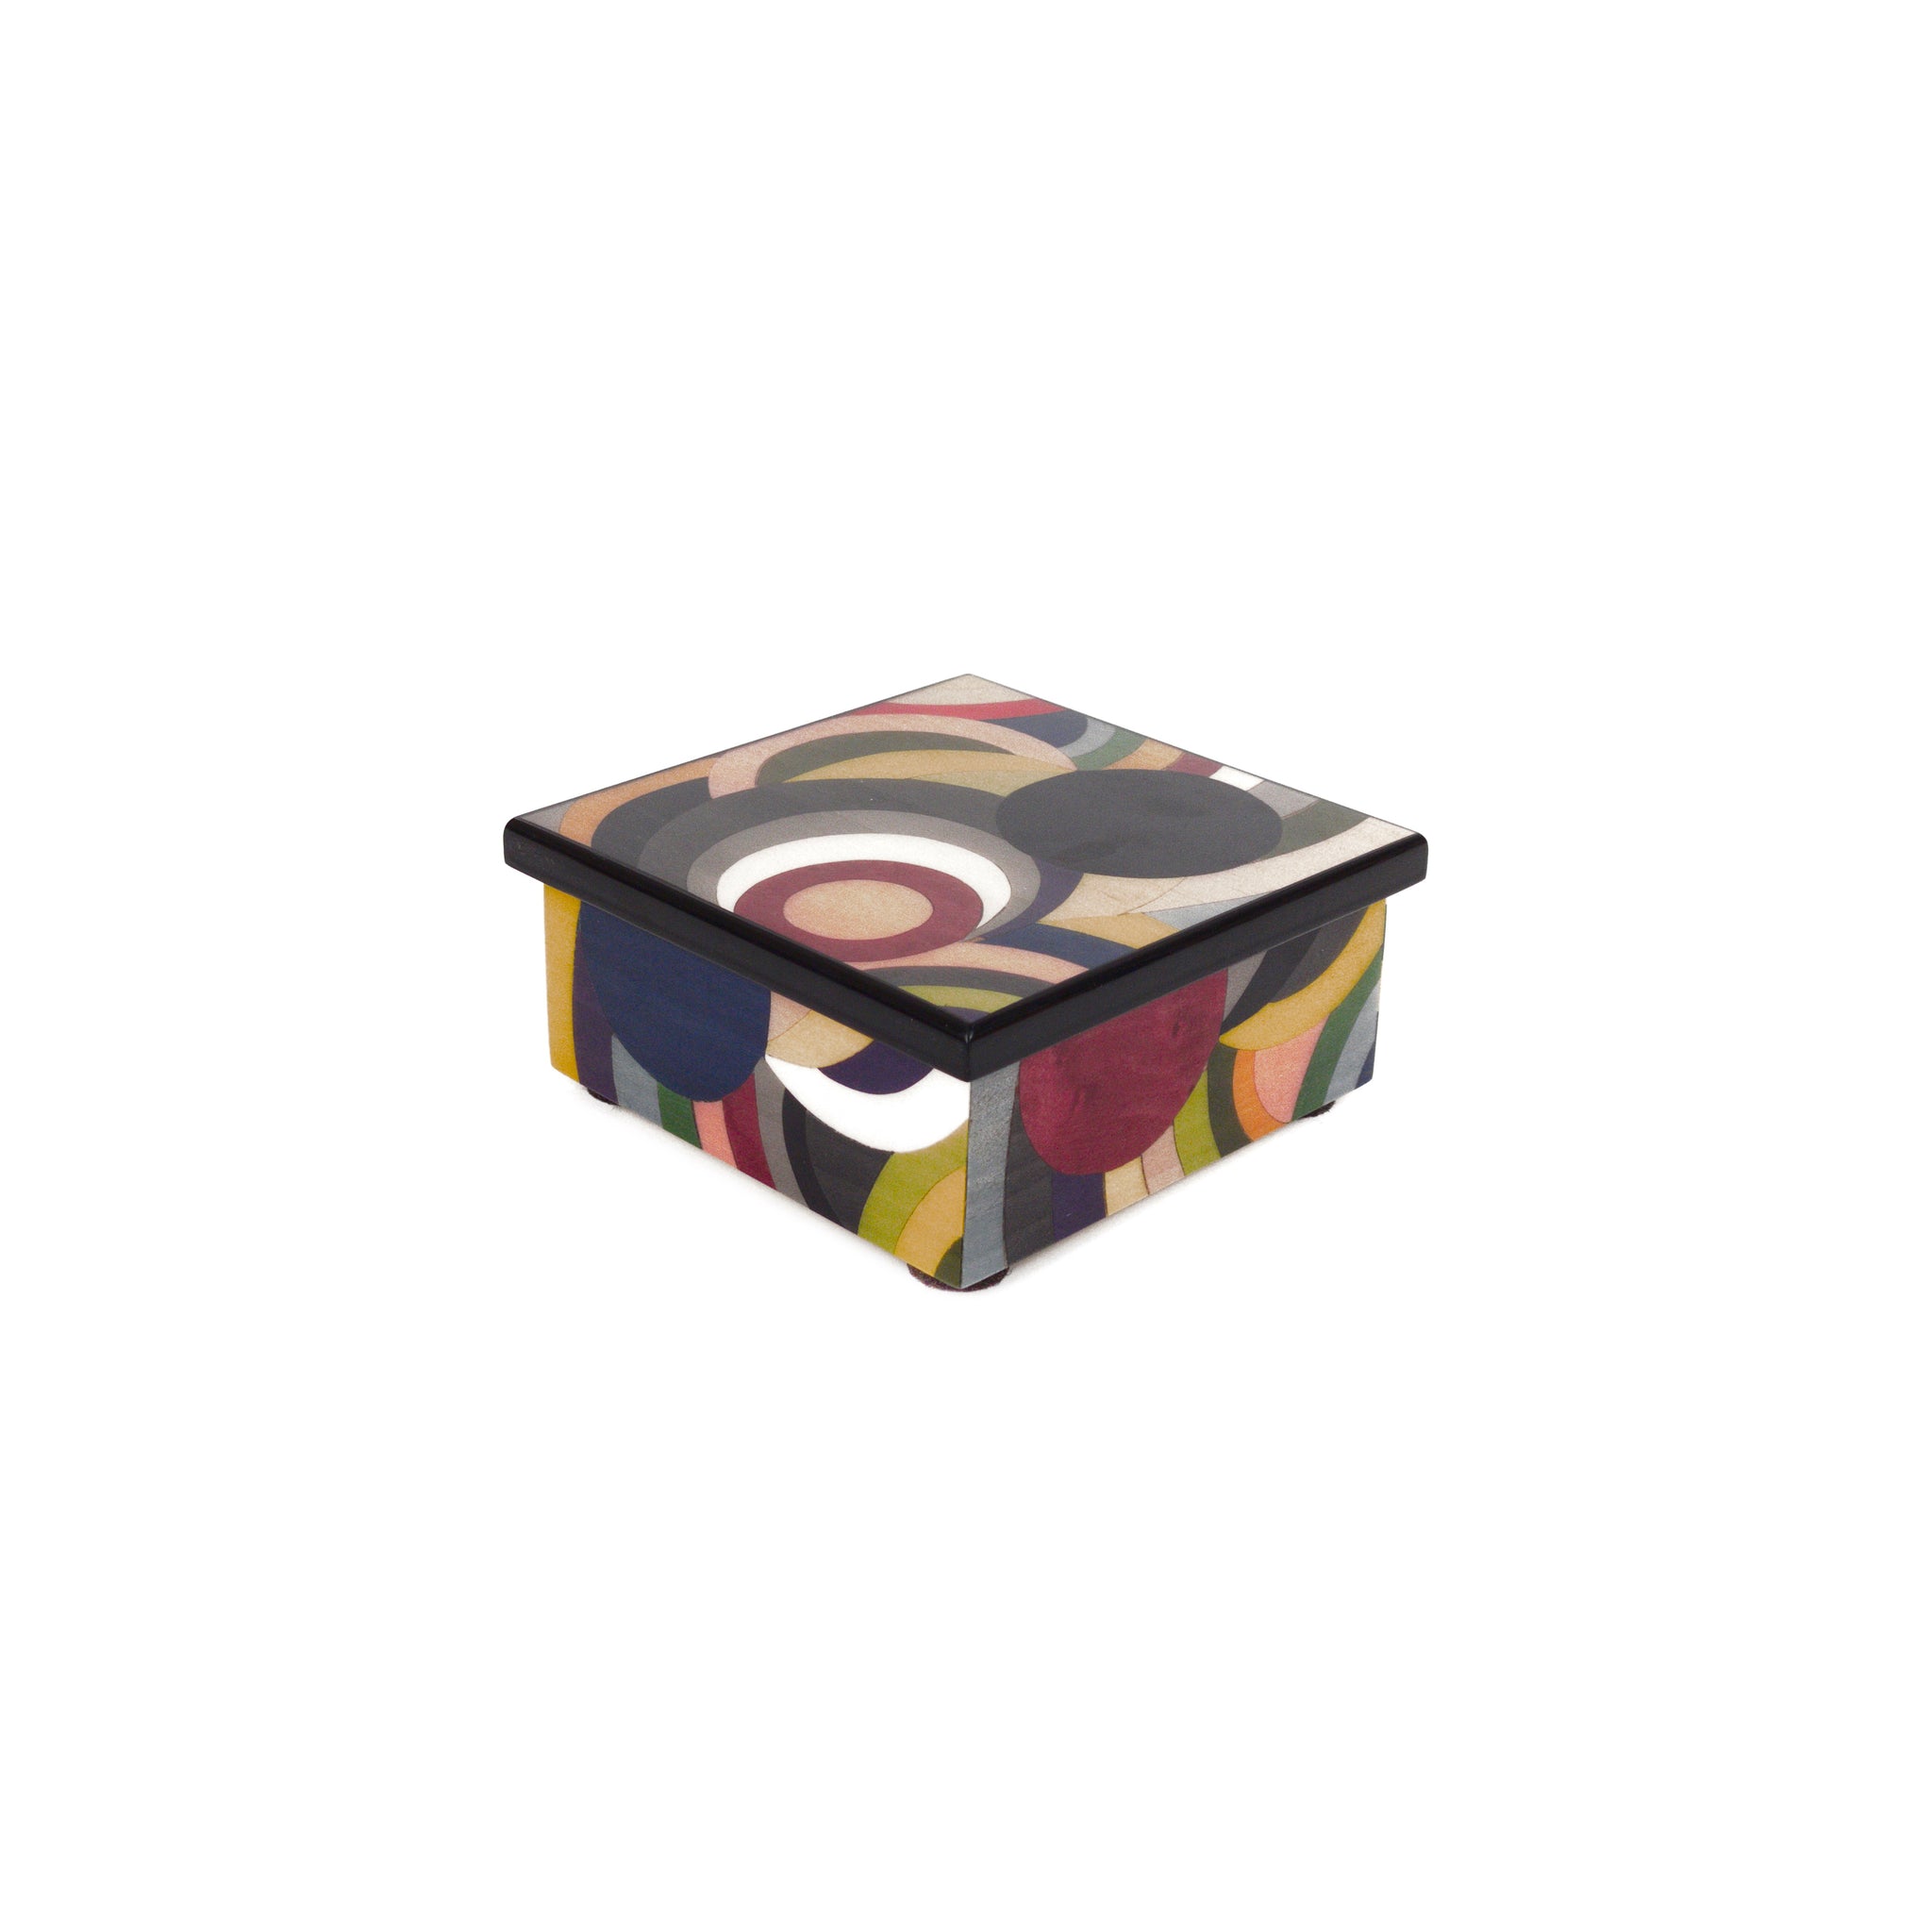 Sole multicolors box